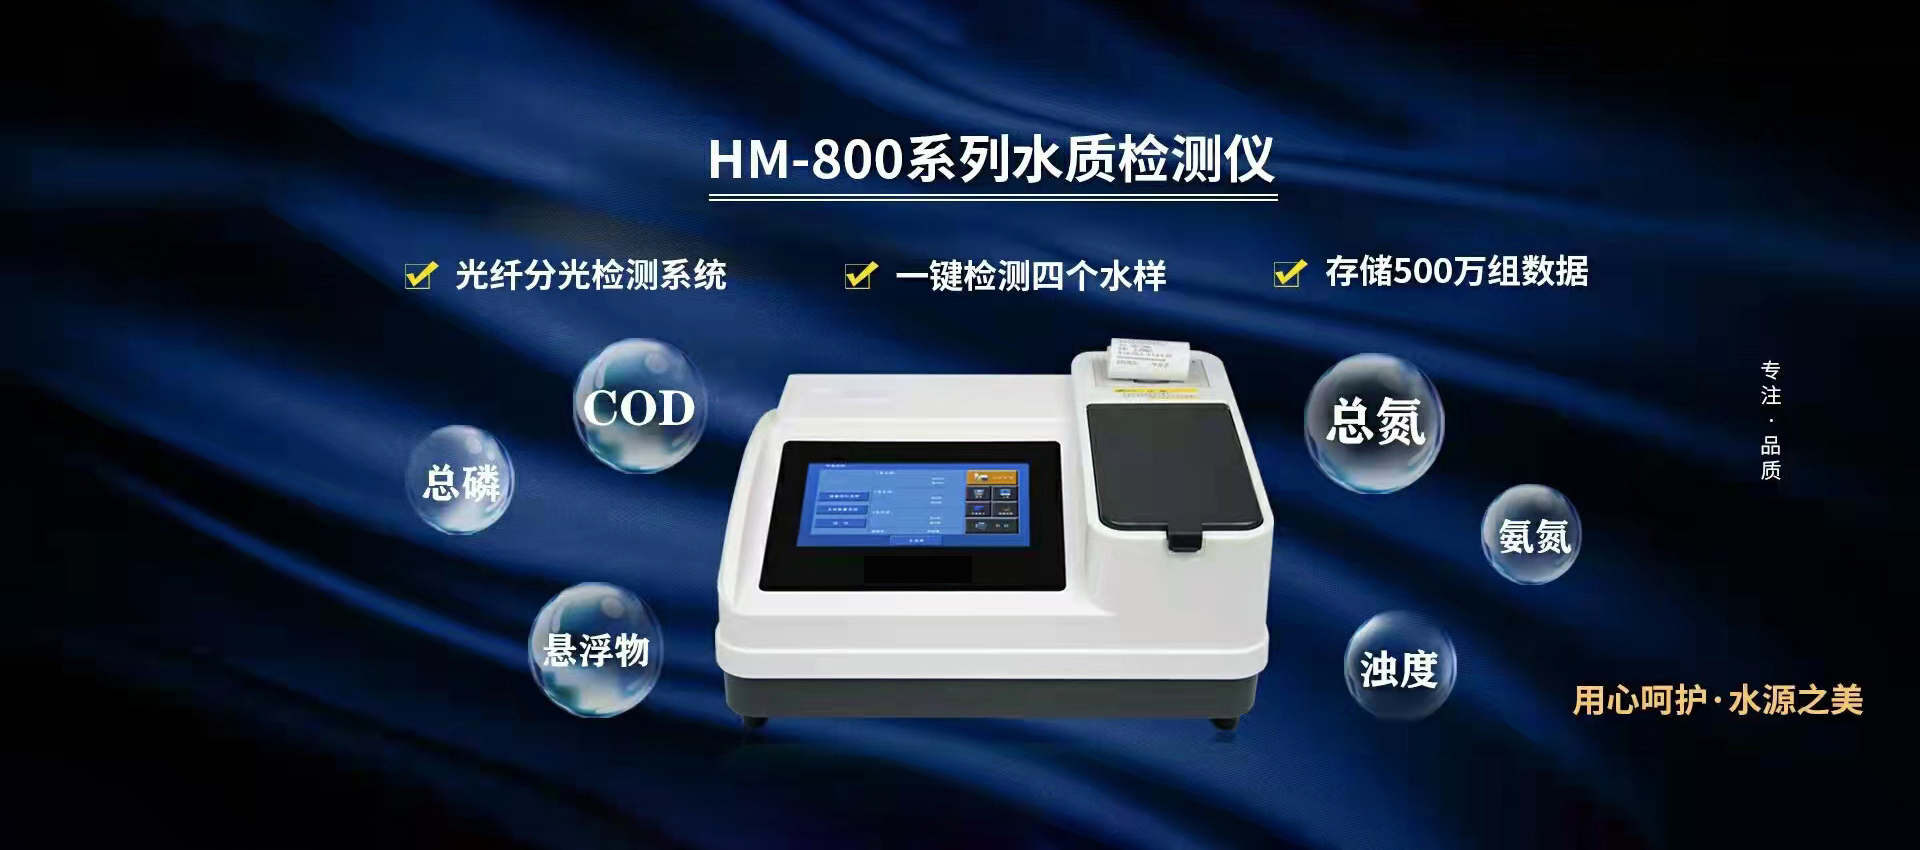 HM-800系列水质检测仪.jpg